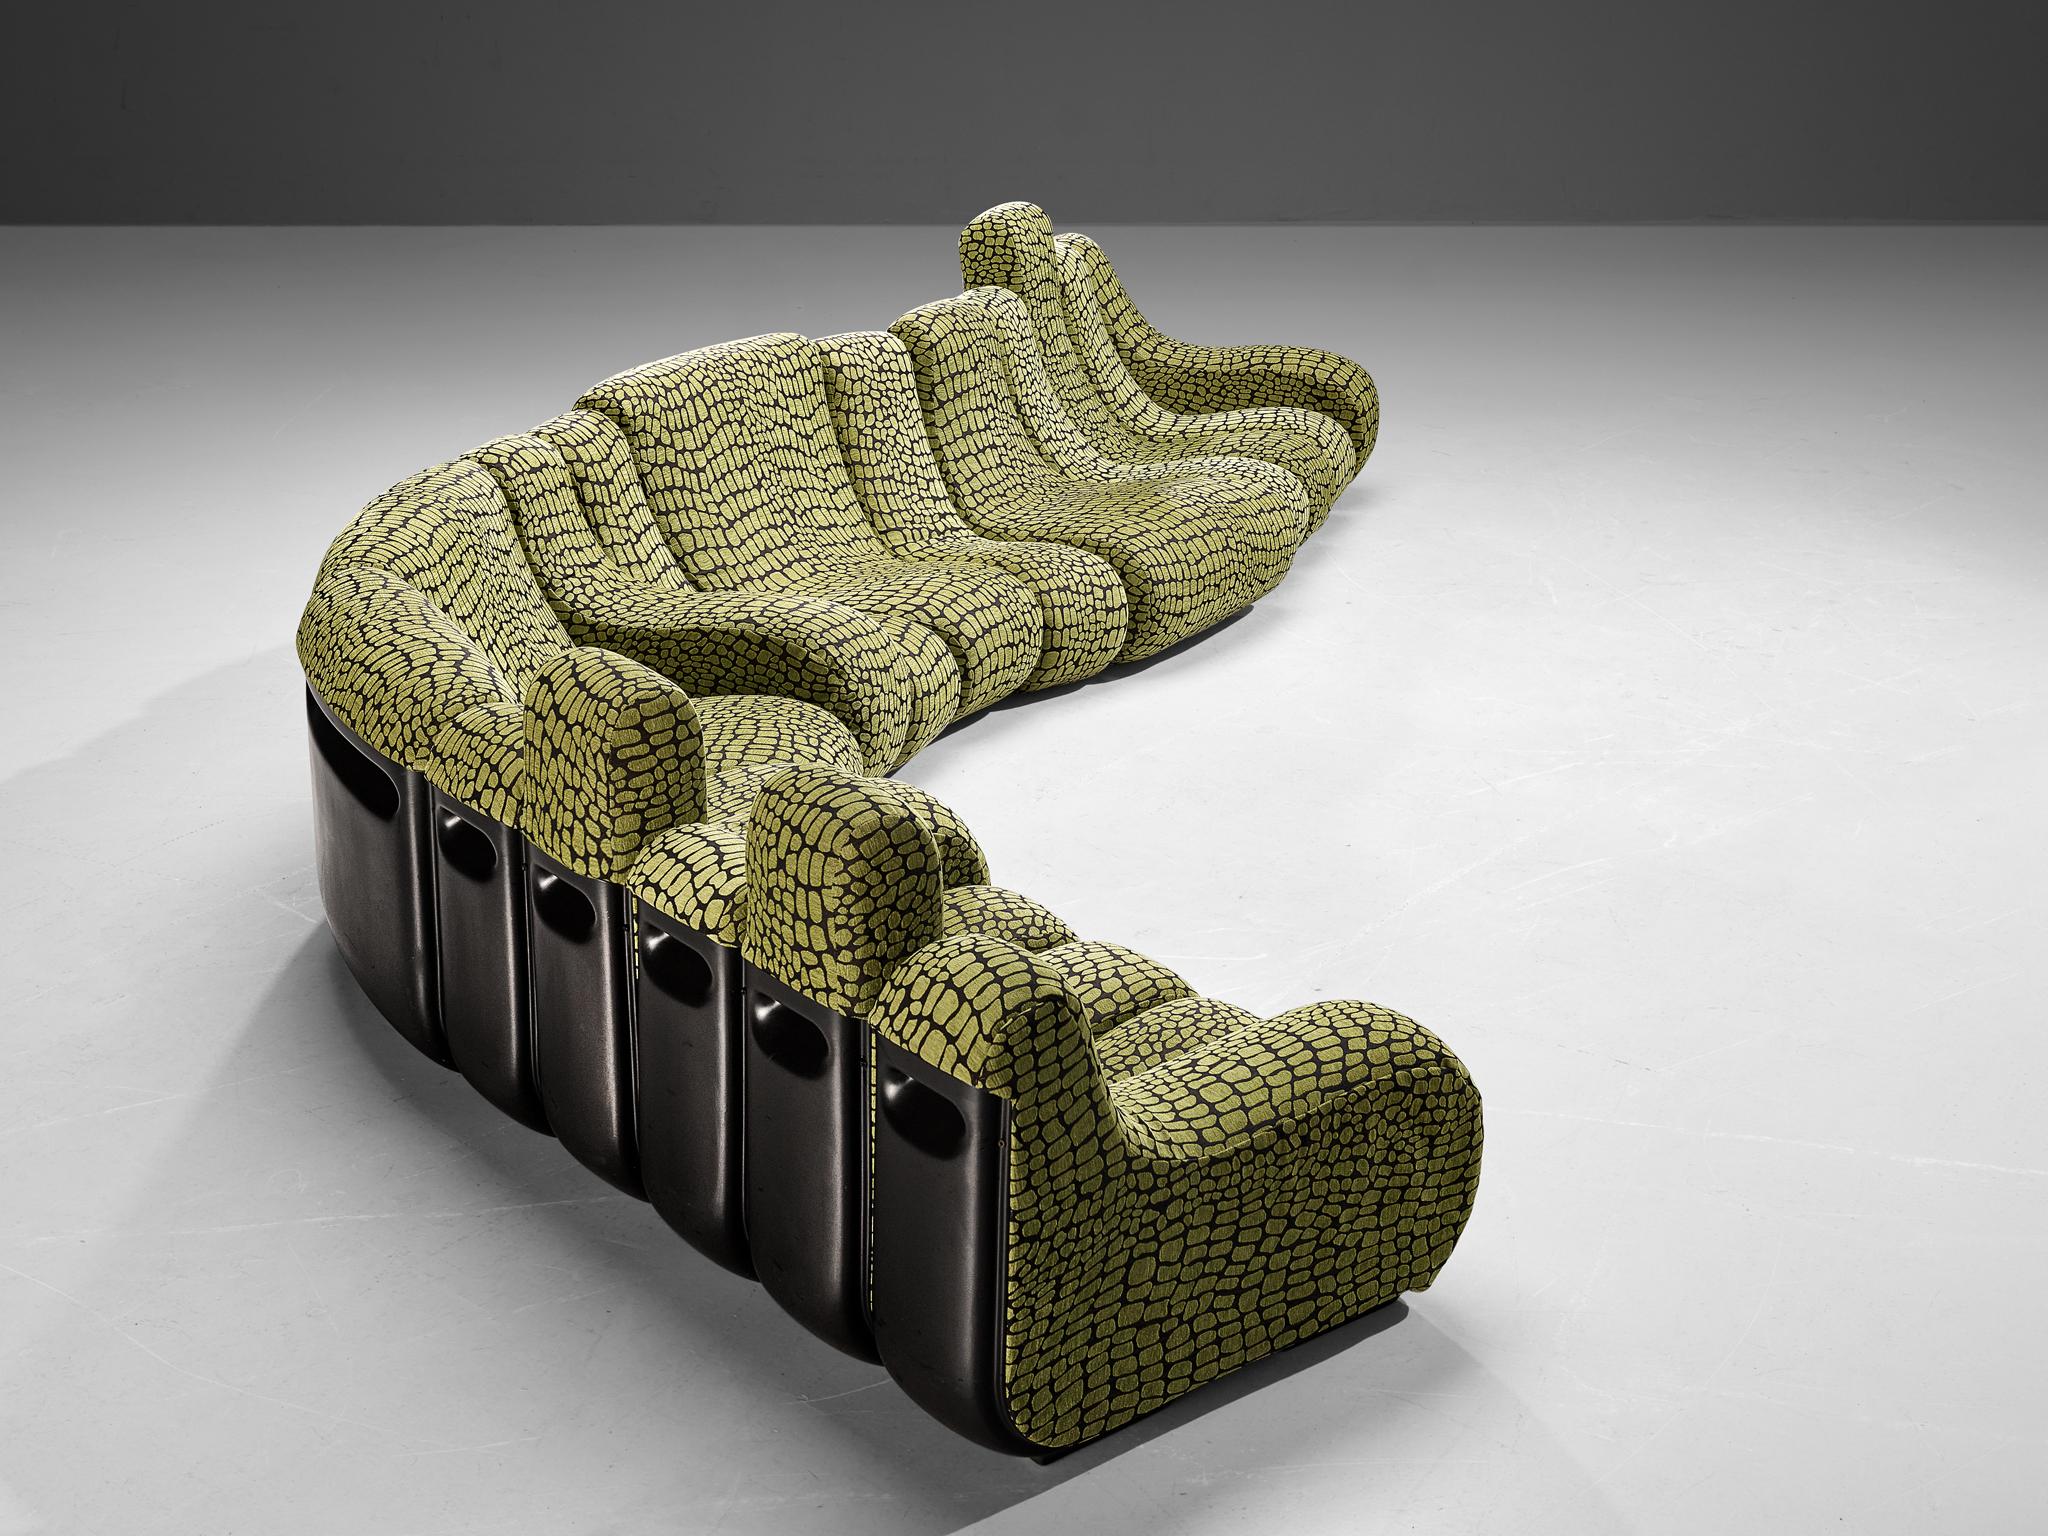 Burkhard Vogtherr für Rosenthal, Modell 'Vario Pillo', modulares Sofa, Deutschland, 1970er Jahre

Dieses üppige baubare Sofa ist ein Entwurf von Burkhard Vogtherr. Eine sehr seltene Art von modularem Sofa mit erstaunlichem schwarzem und grünem